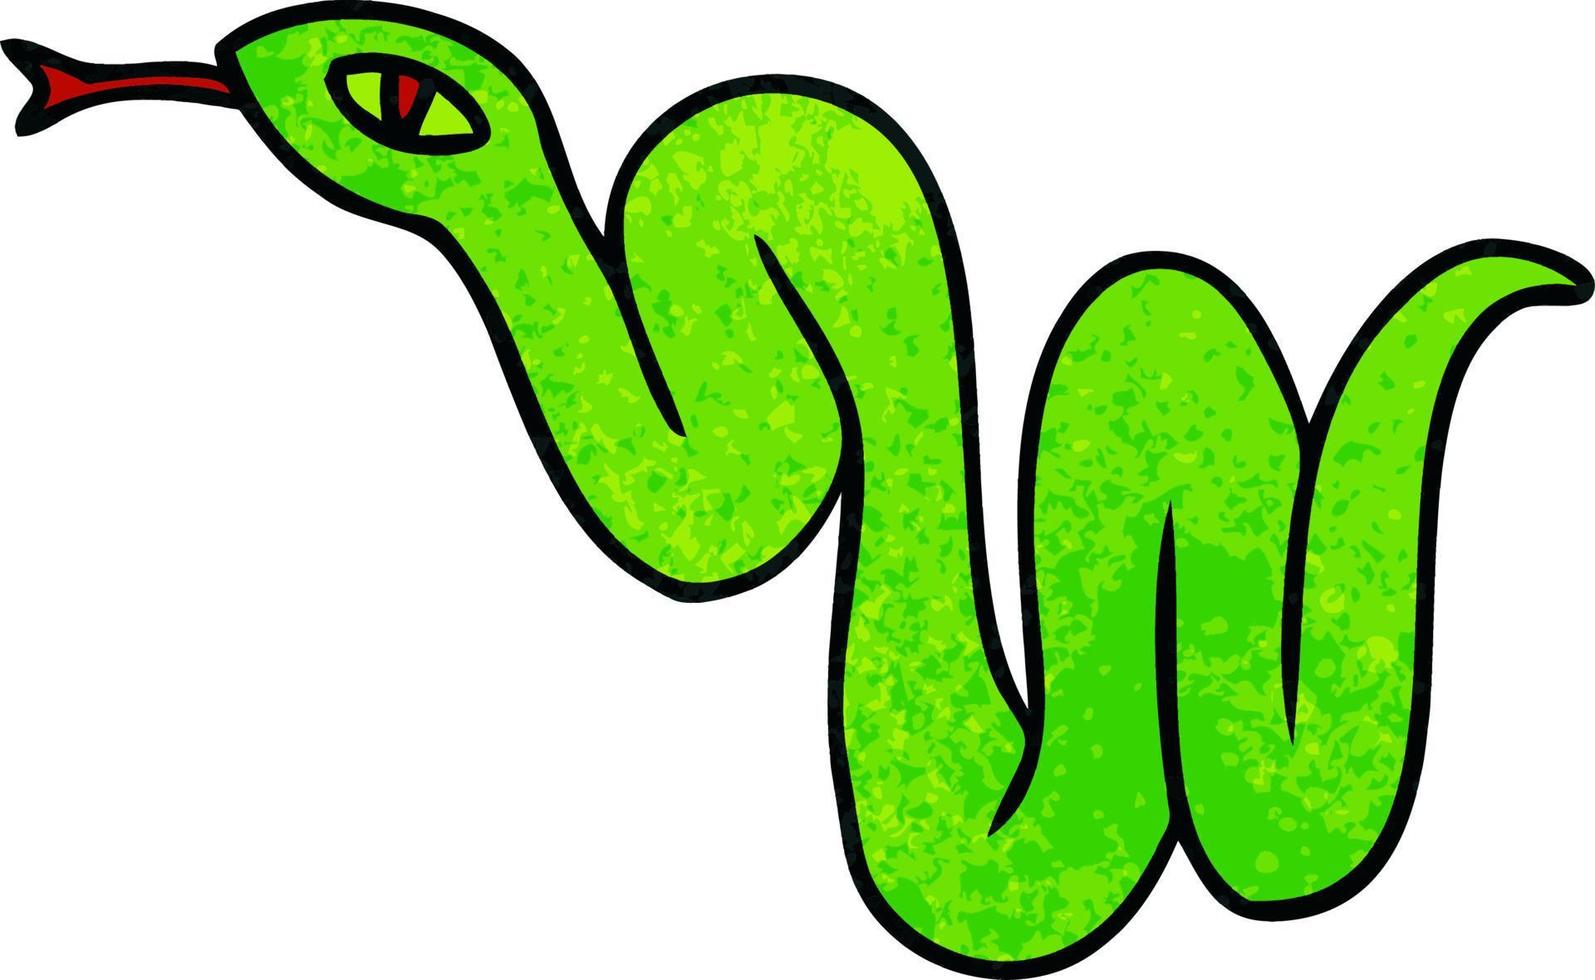 textured cartoon doodle of a garden snake vector